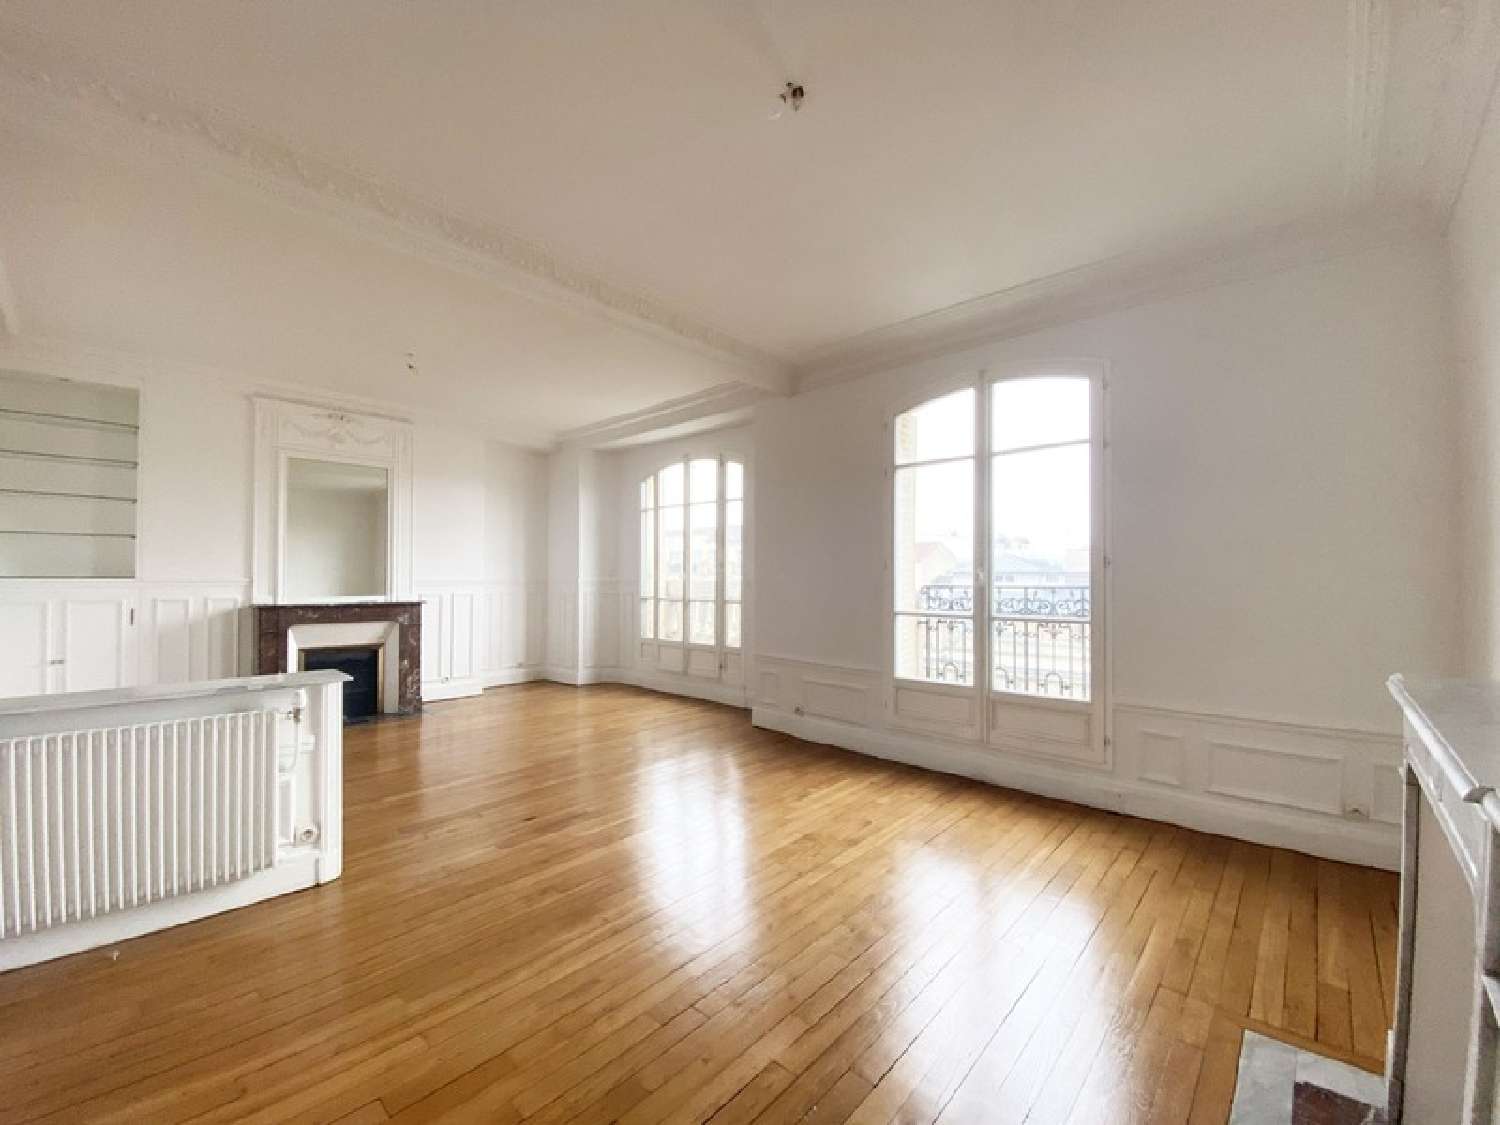  à vendre appartement Clichy Hauts-de-Seine 5